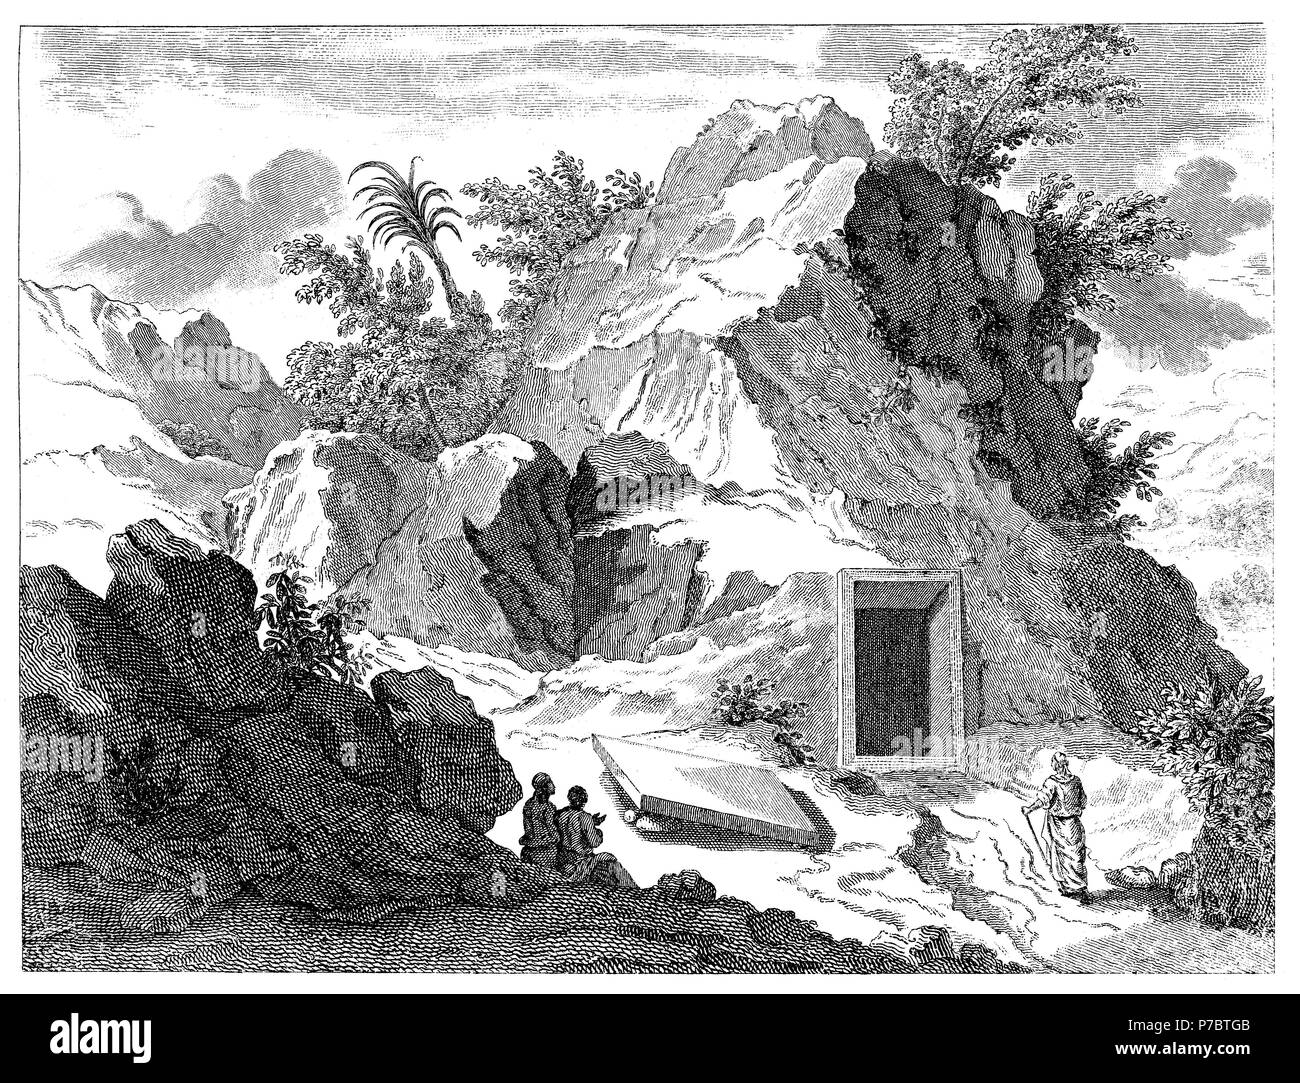 Historia sagrada. Tumba de los hebreros con abertura lateral. Grabado de 1862. Stock Photo